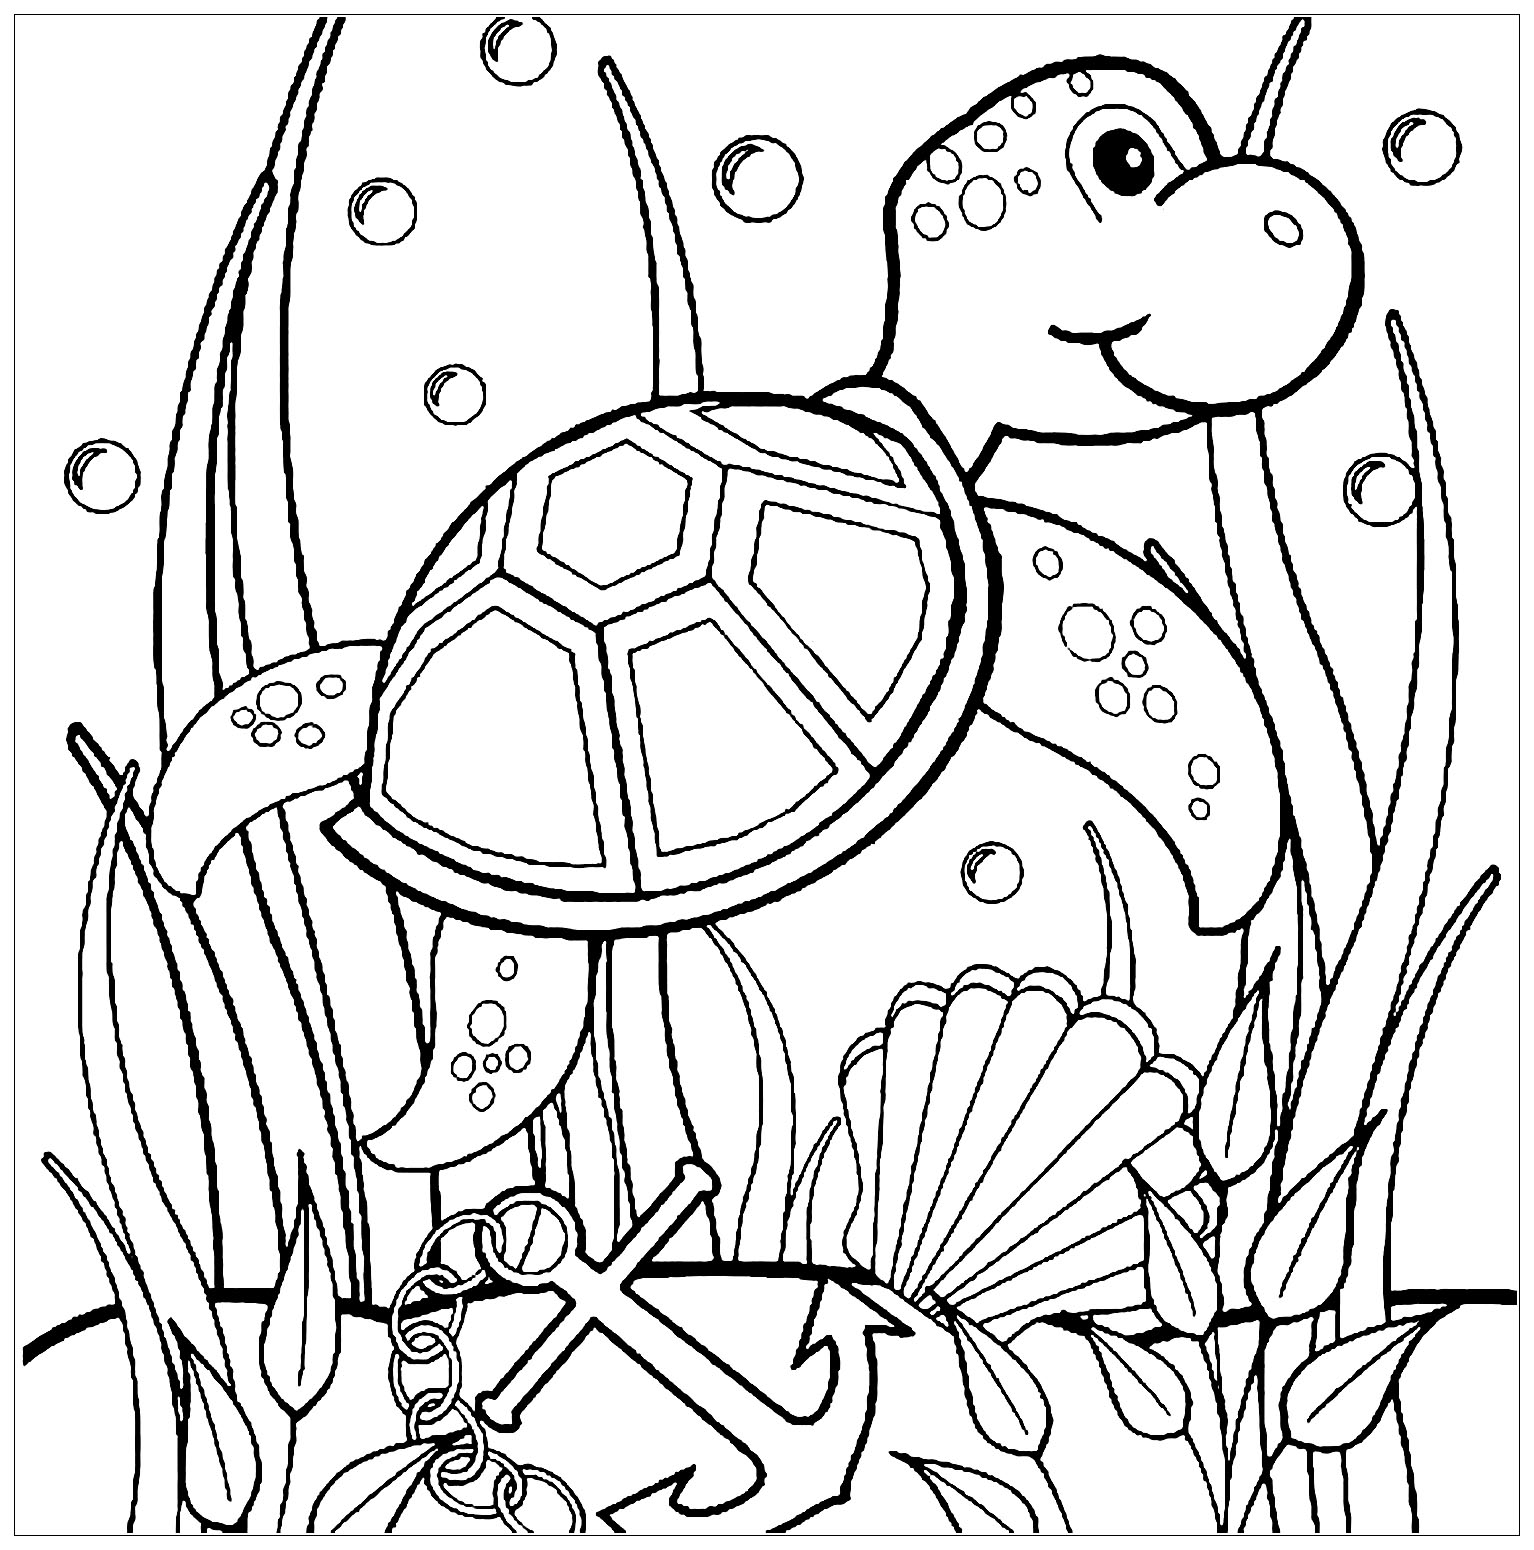 Coloração de tartaruga bonita e simples para crianças